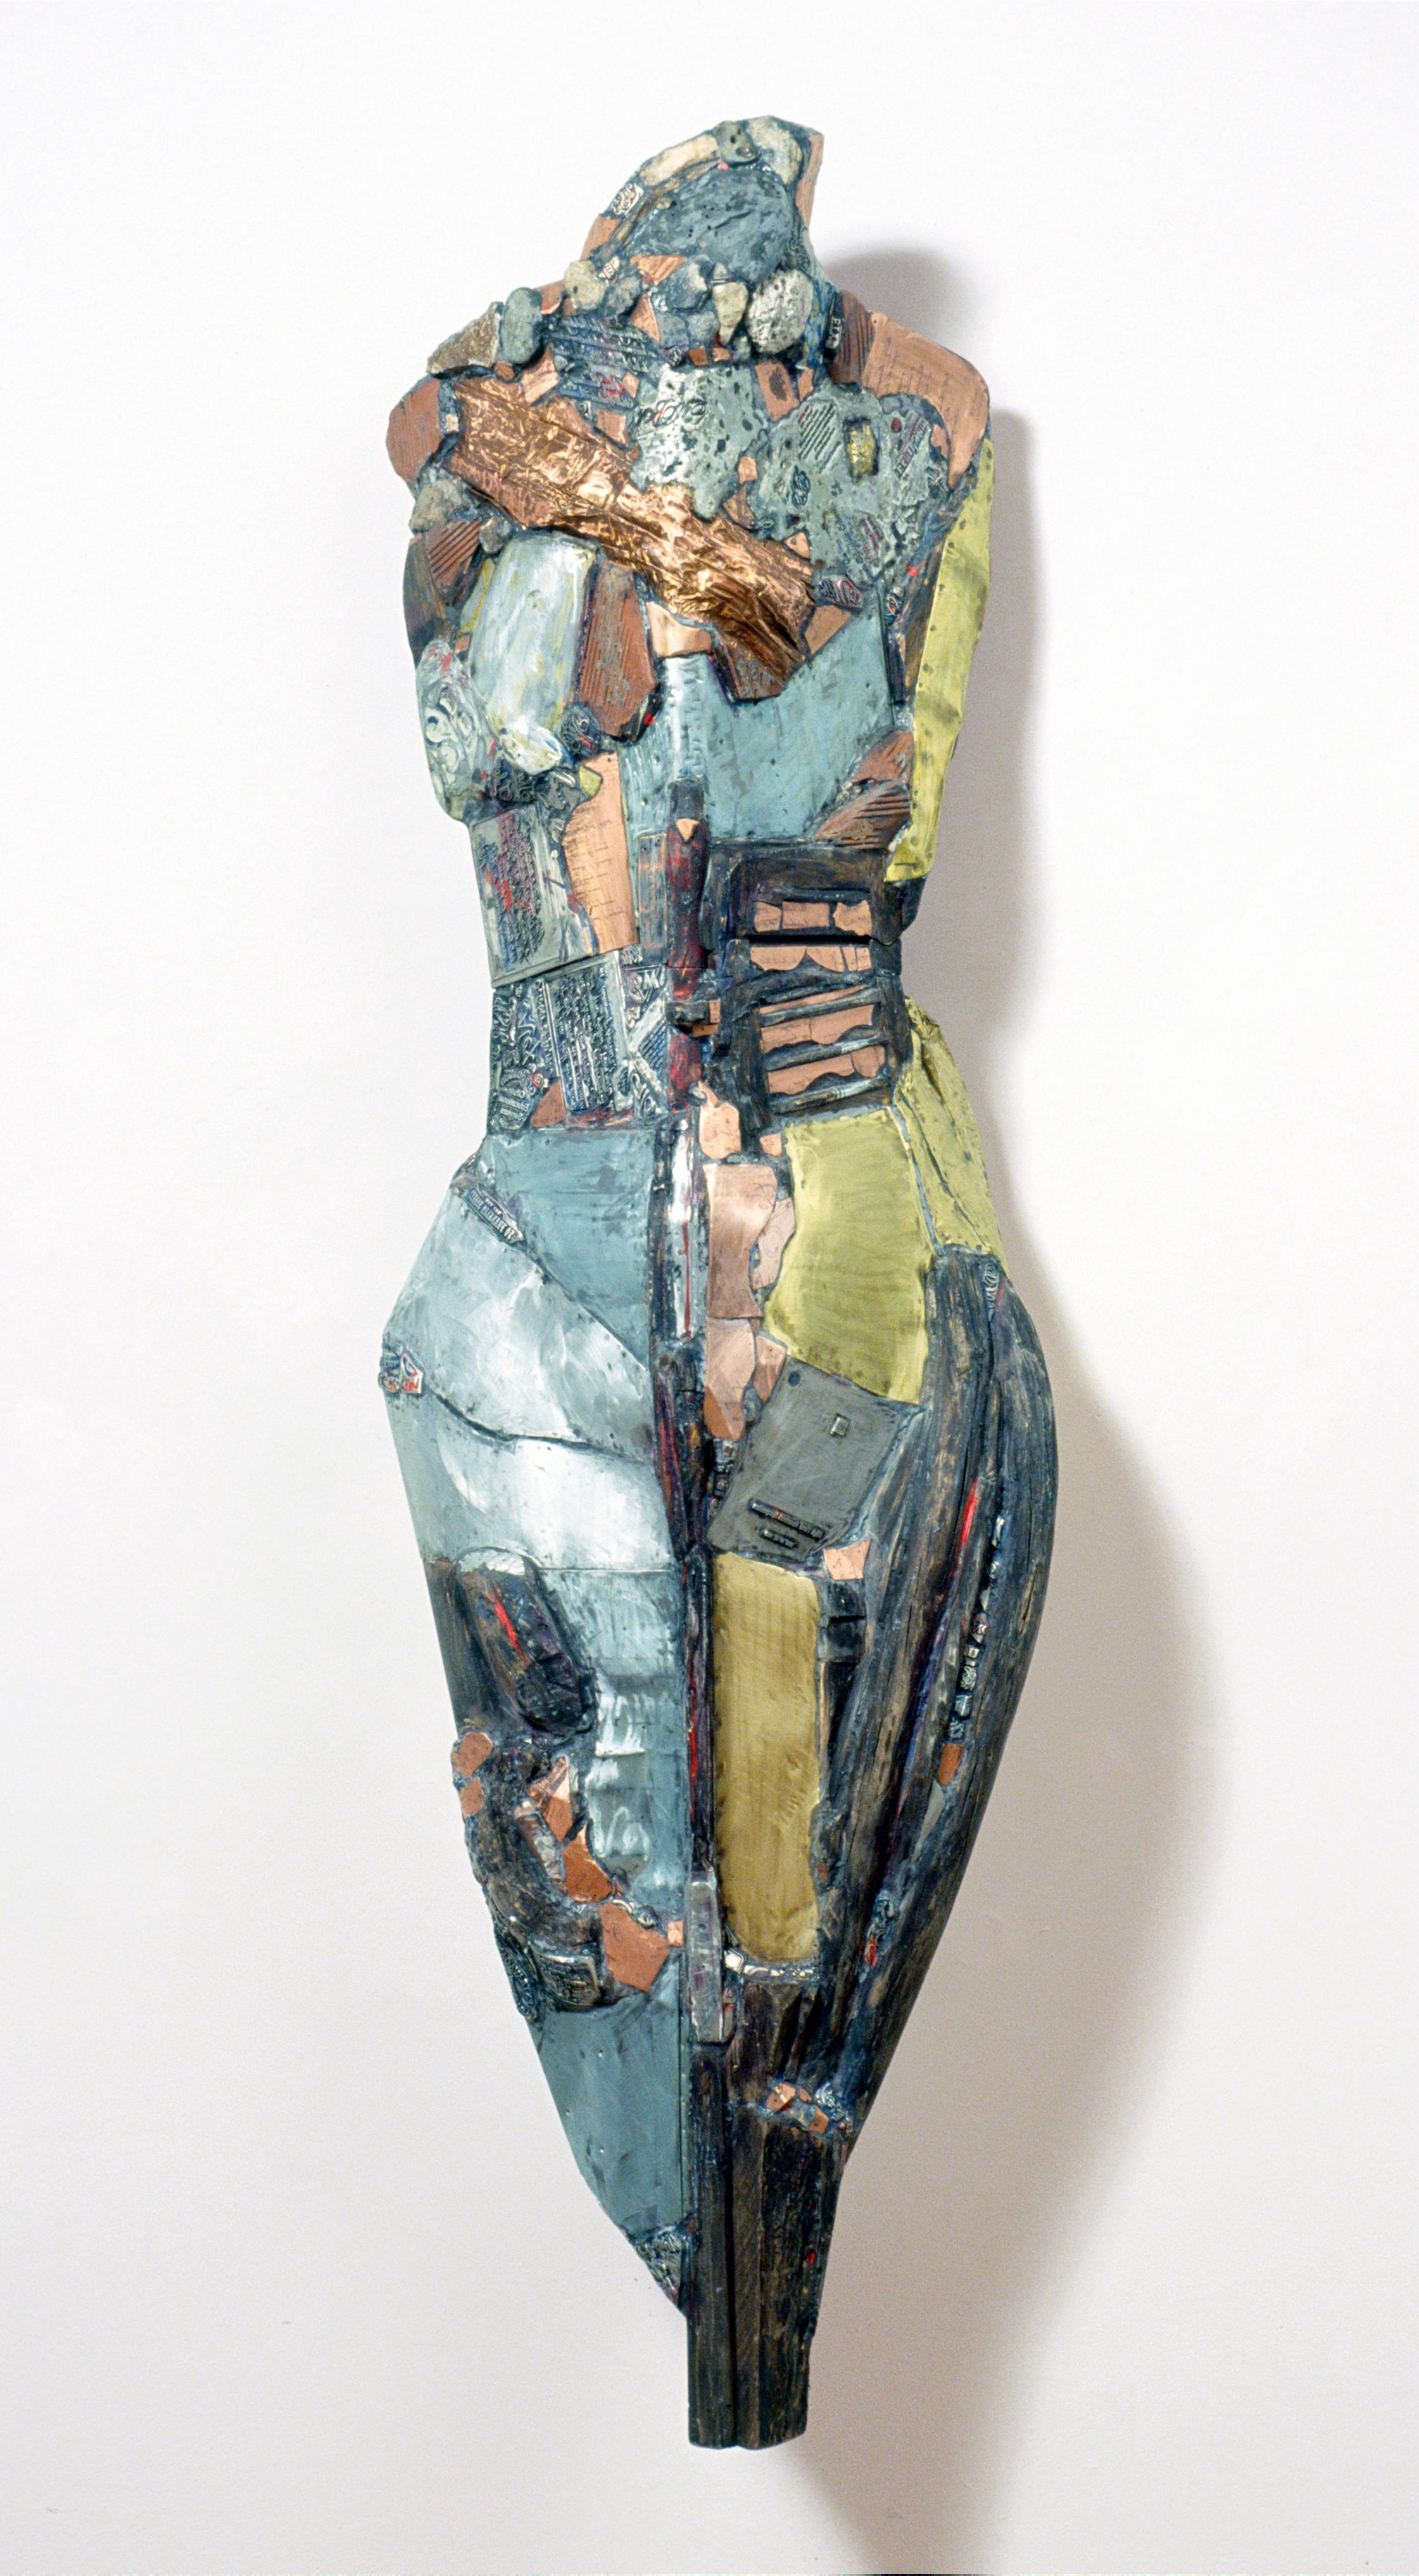 Linda Stein, Chevalier demain 542 - Sculpture contemporaine en bois et métal